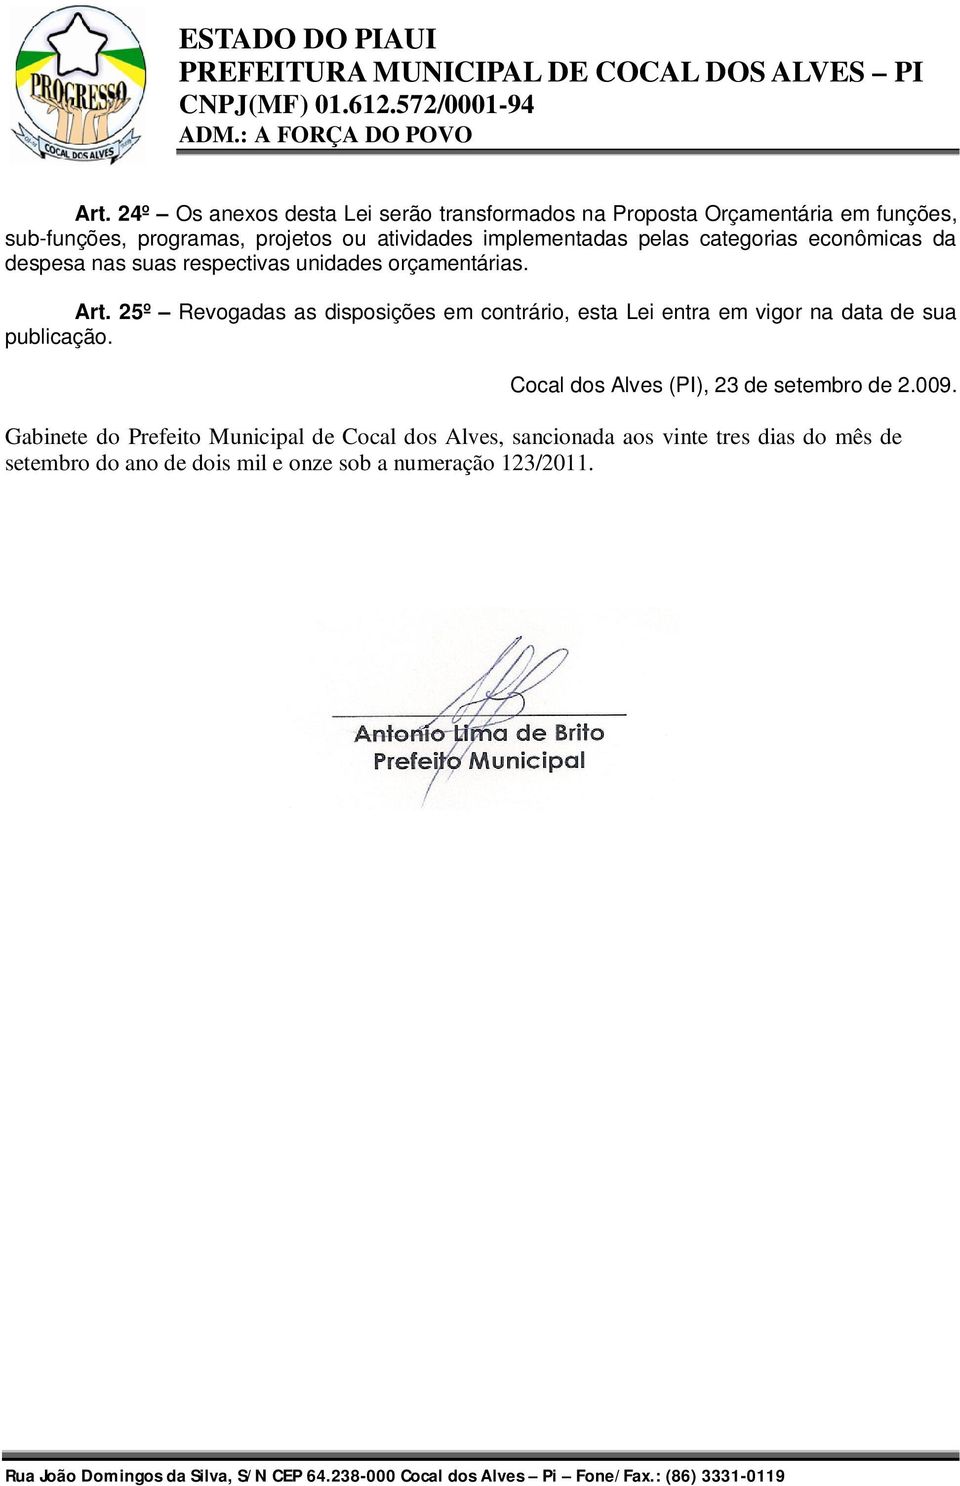 25º Revogadas as disposições em contrário, esta Lei entra em vigor na data de sua publicação. Cocal dos Alves (PI), 23 de setembro de 2.009.